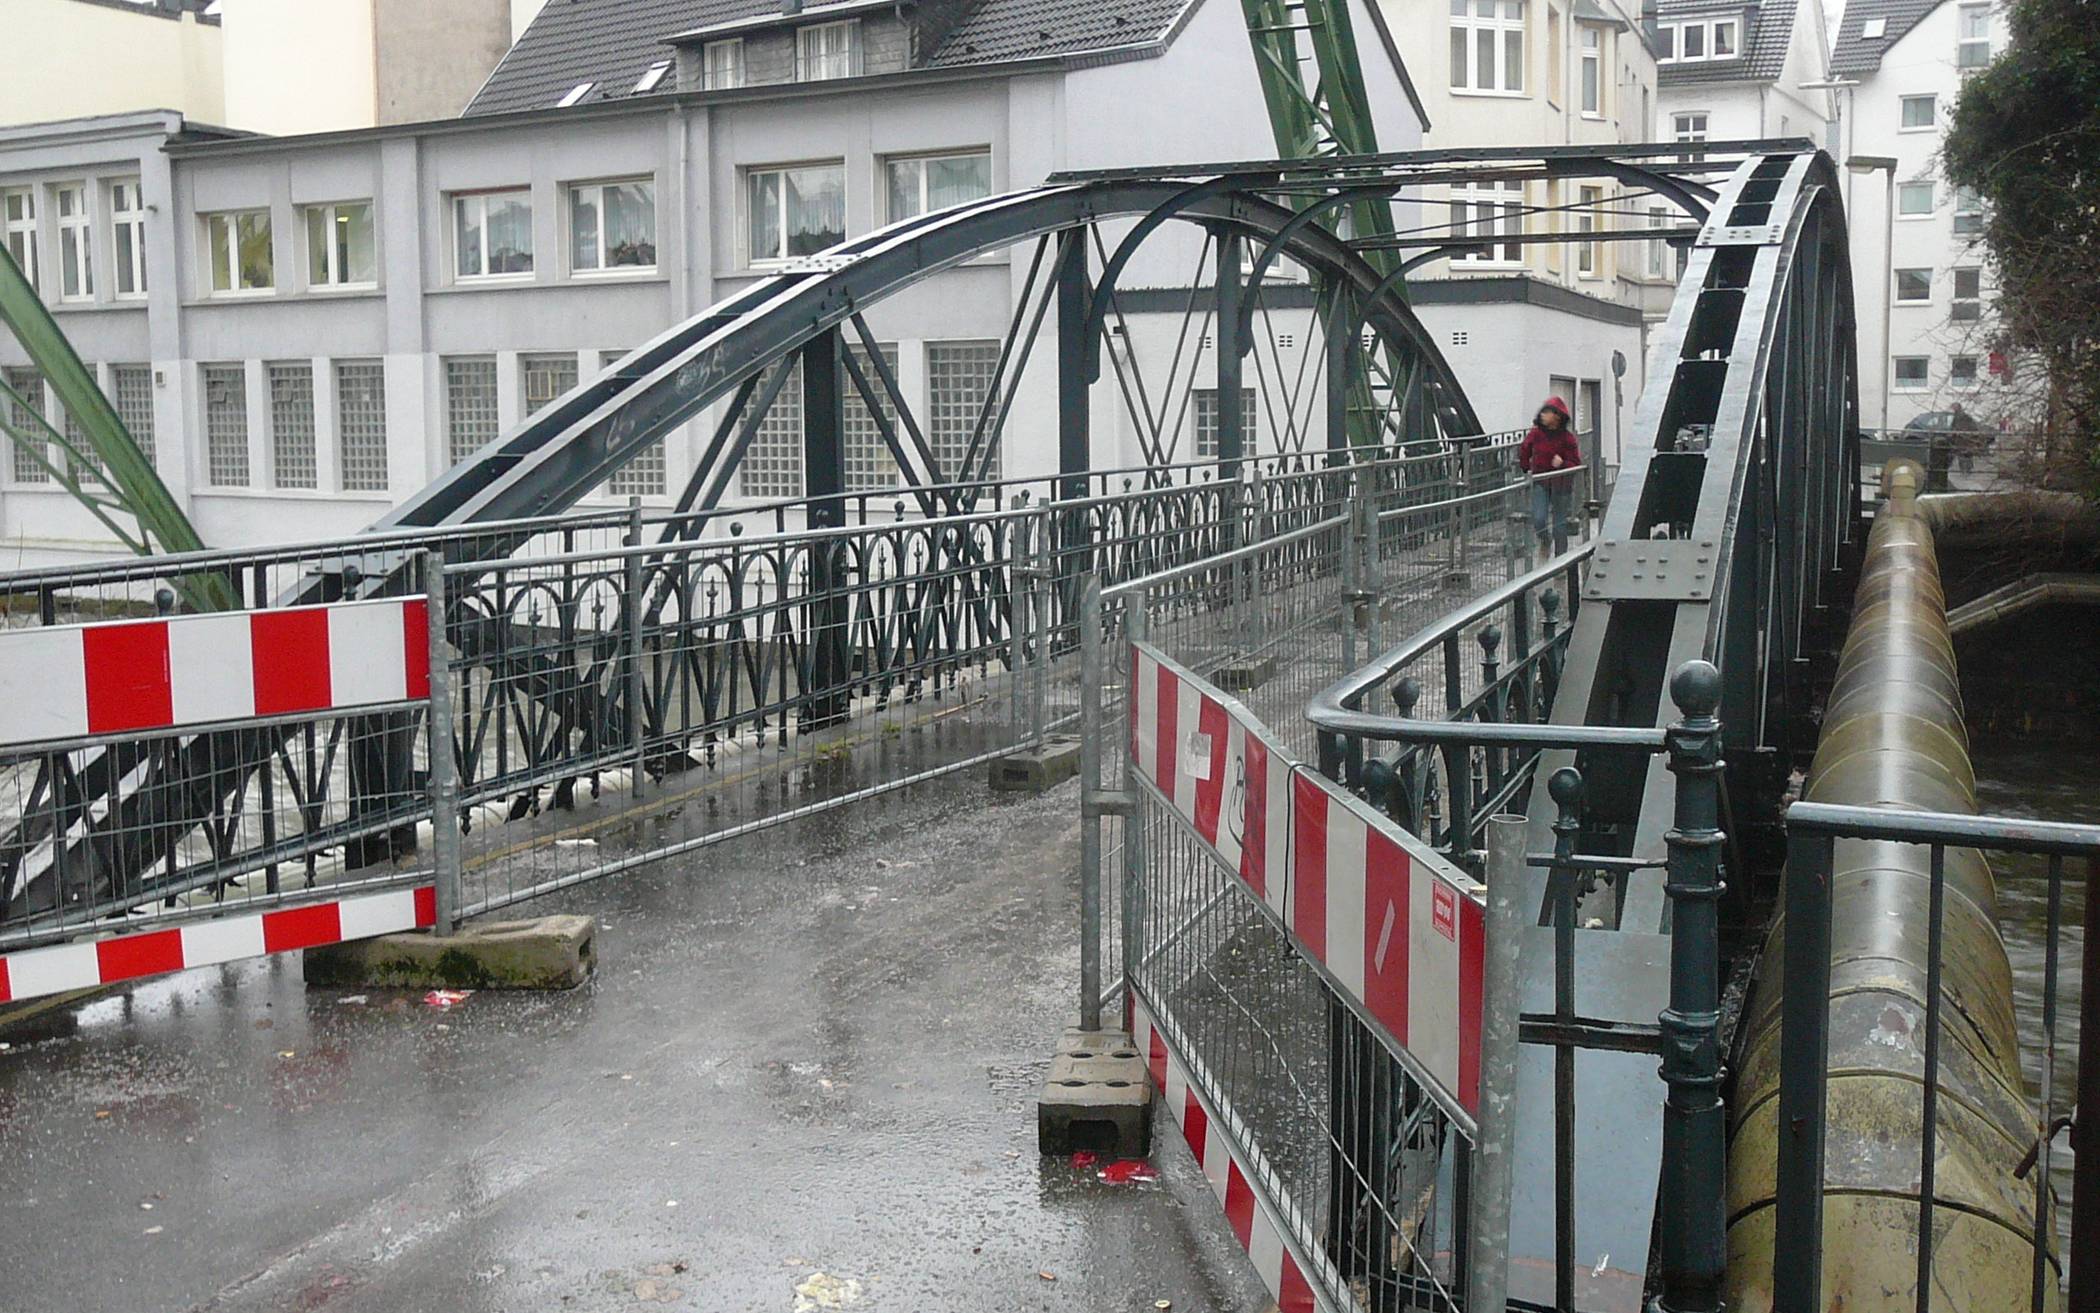  Die Brücke fristet seit Jahren ein trauriges Dasein - hier ein Bild aus dem Jahr 2011- 